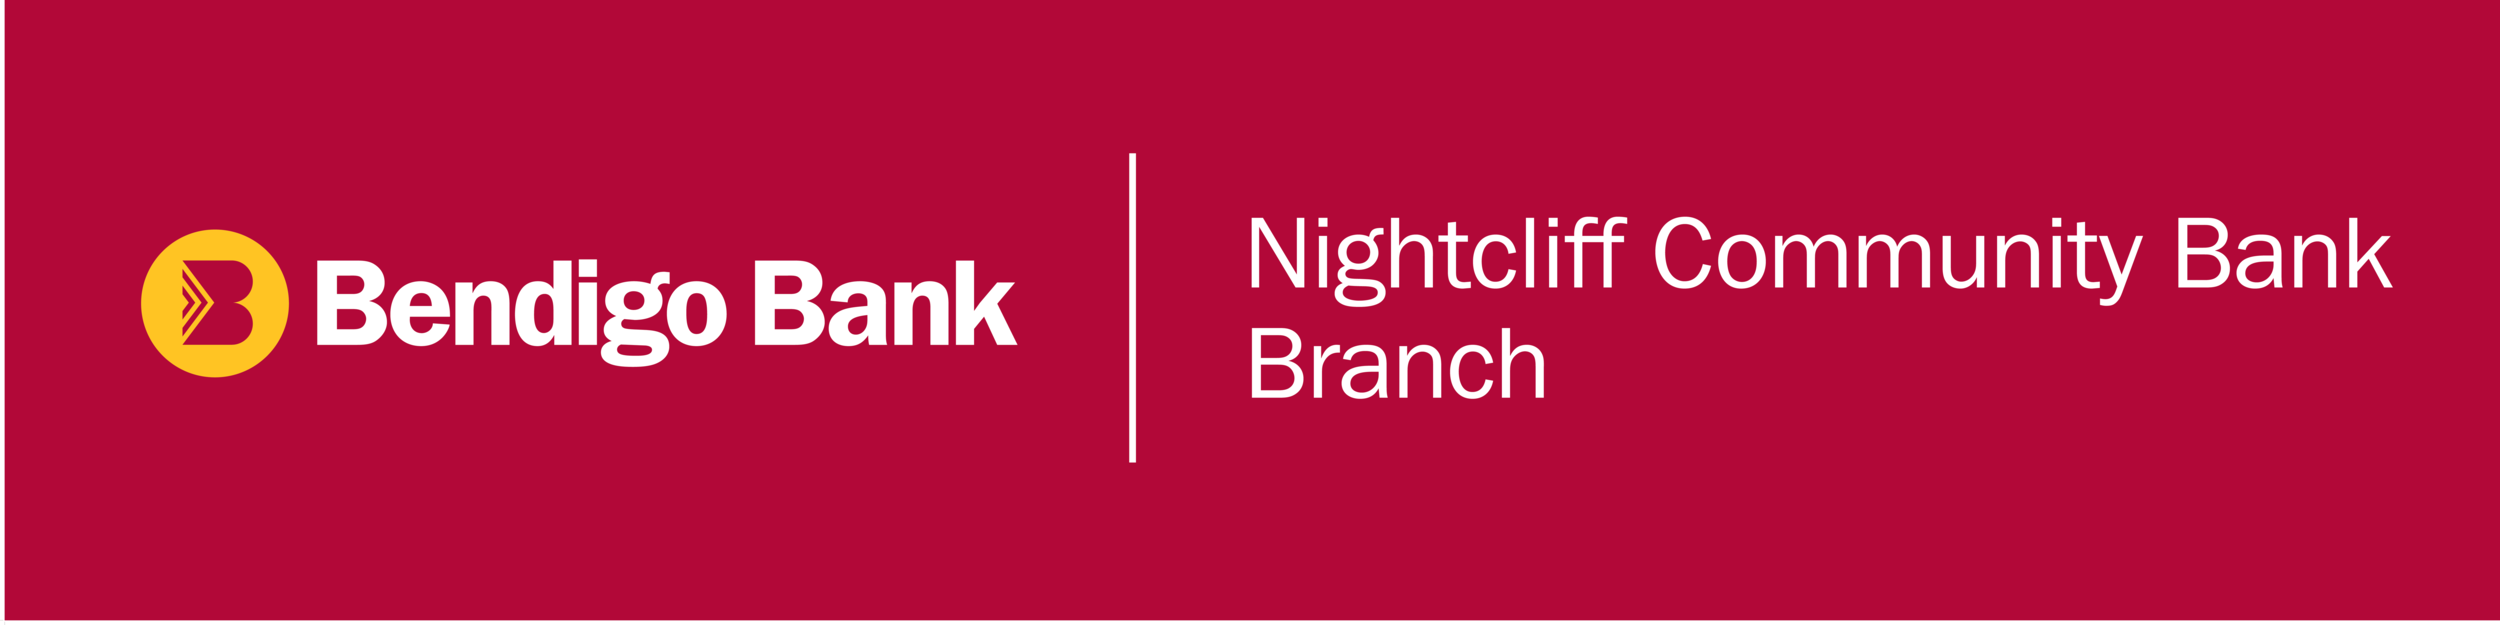 Bendigo Bank_Nightcliff community bank banner logo 1.png